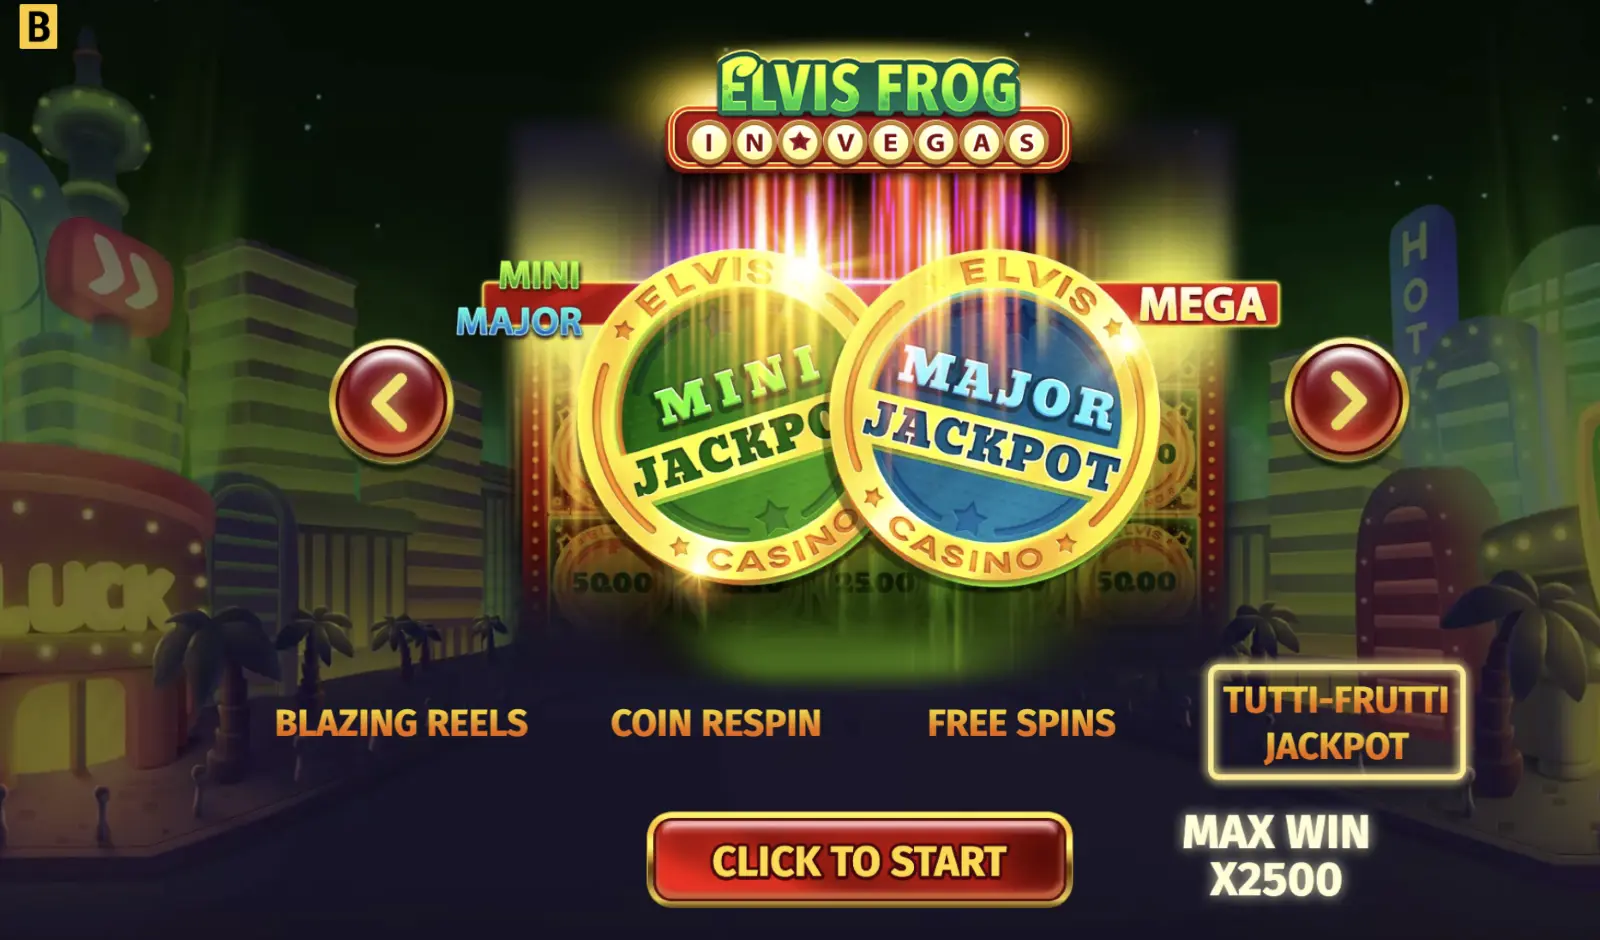 Elvis Frog in Las Vegas